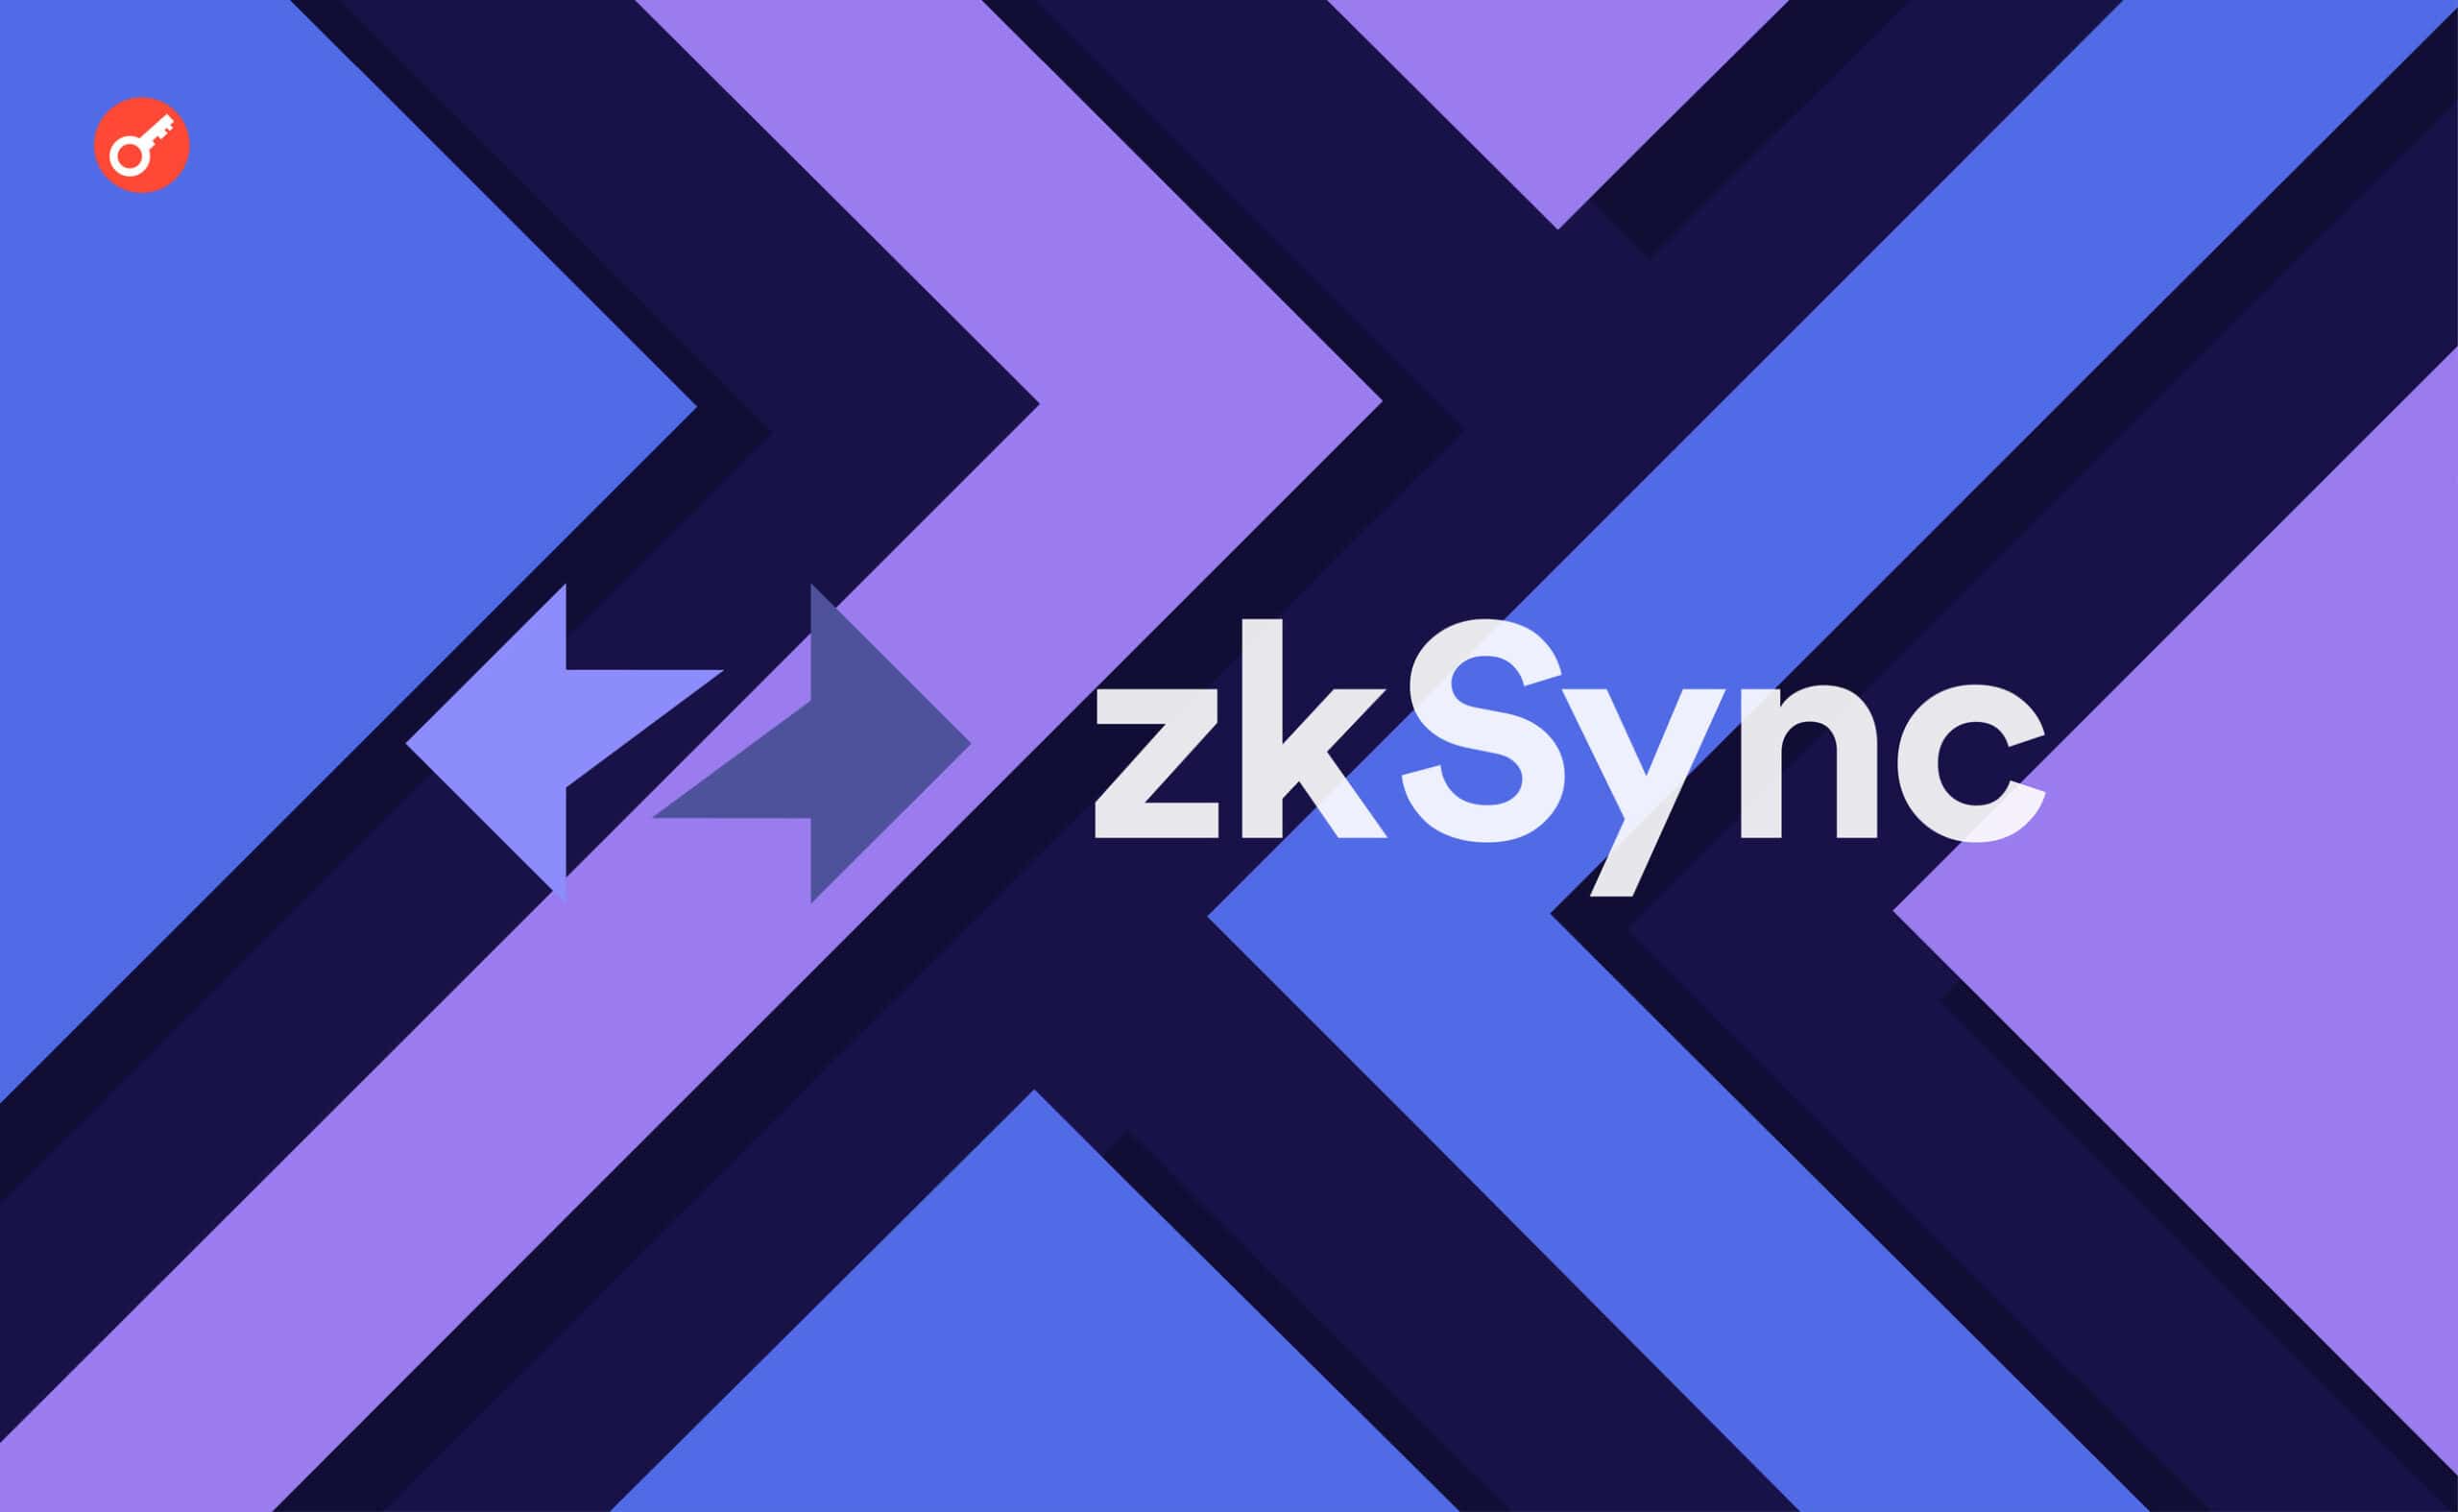 zkSync Era не працювала протягом 4 годин. Головний колаж новини.